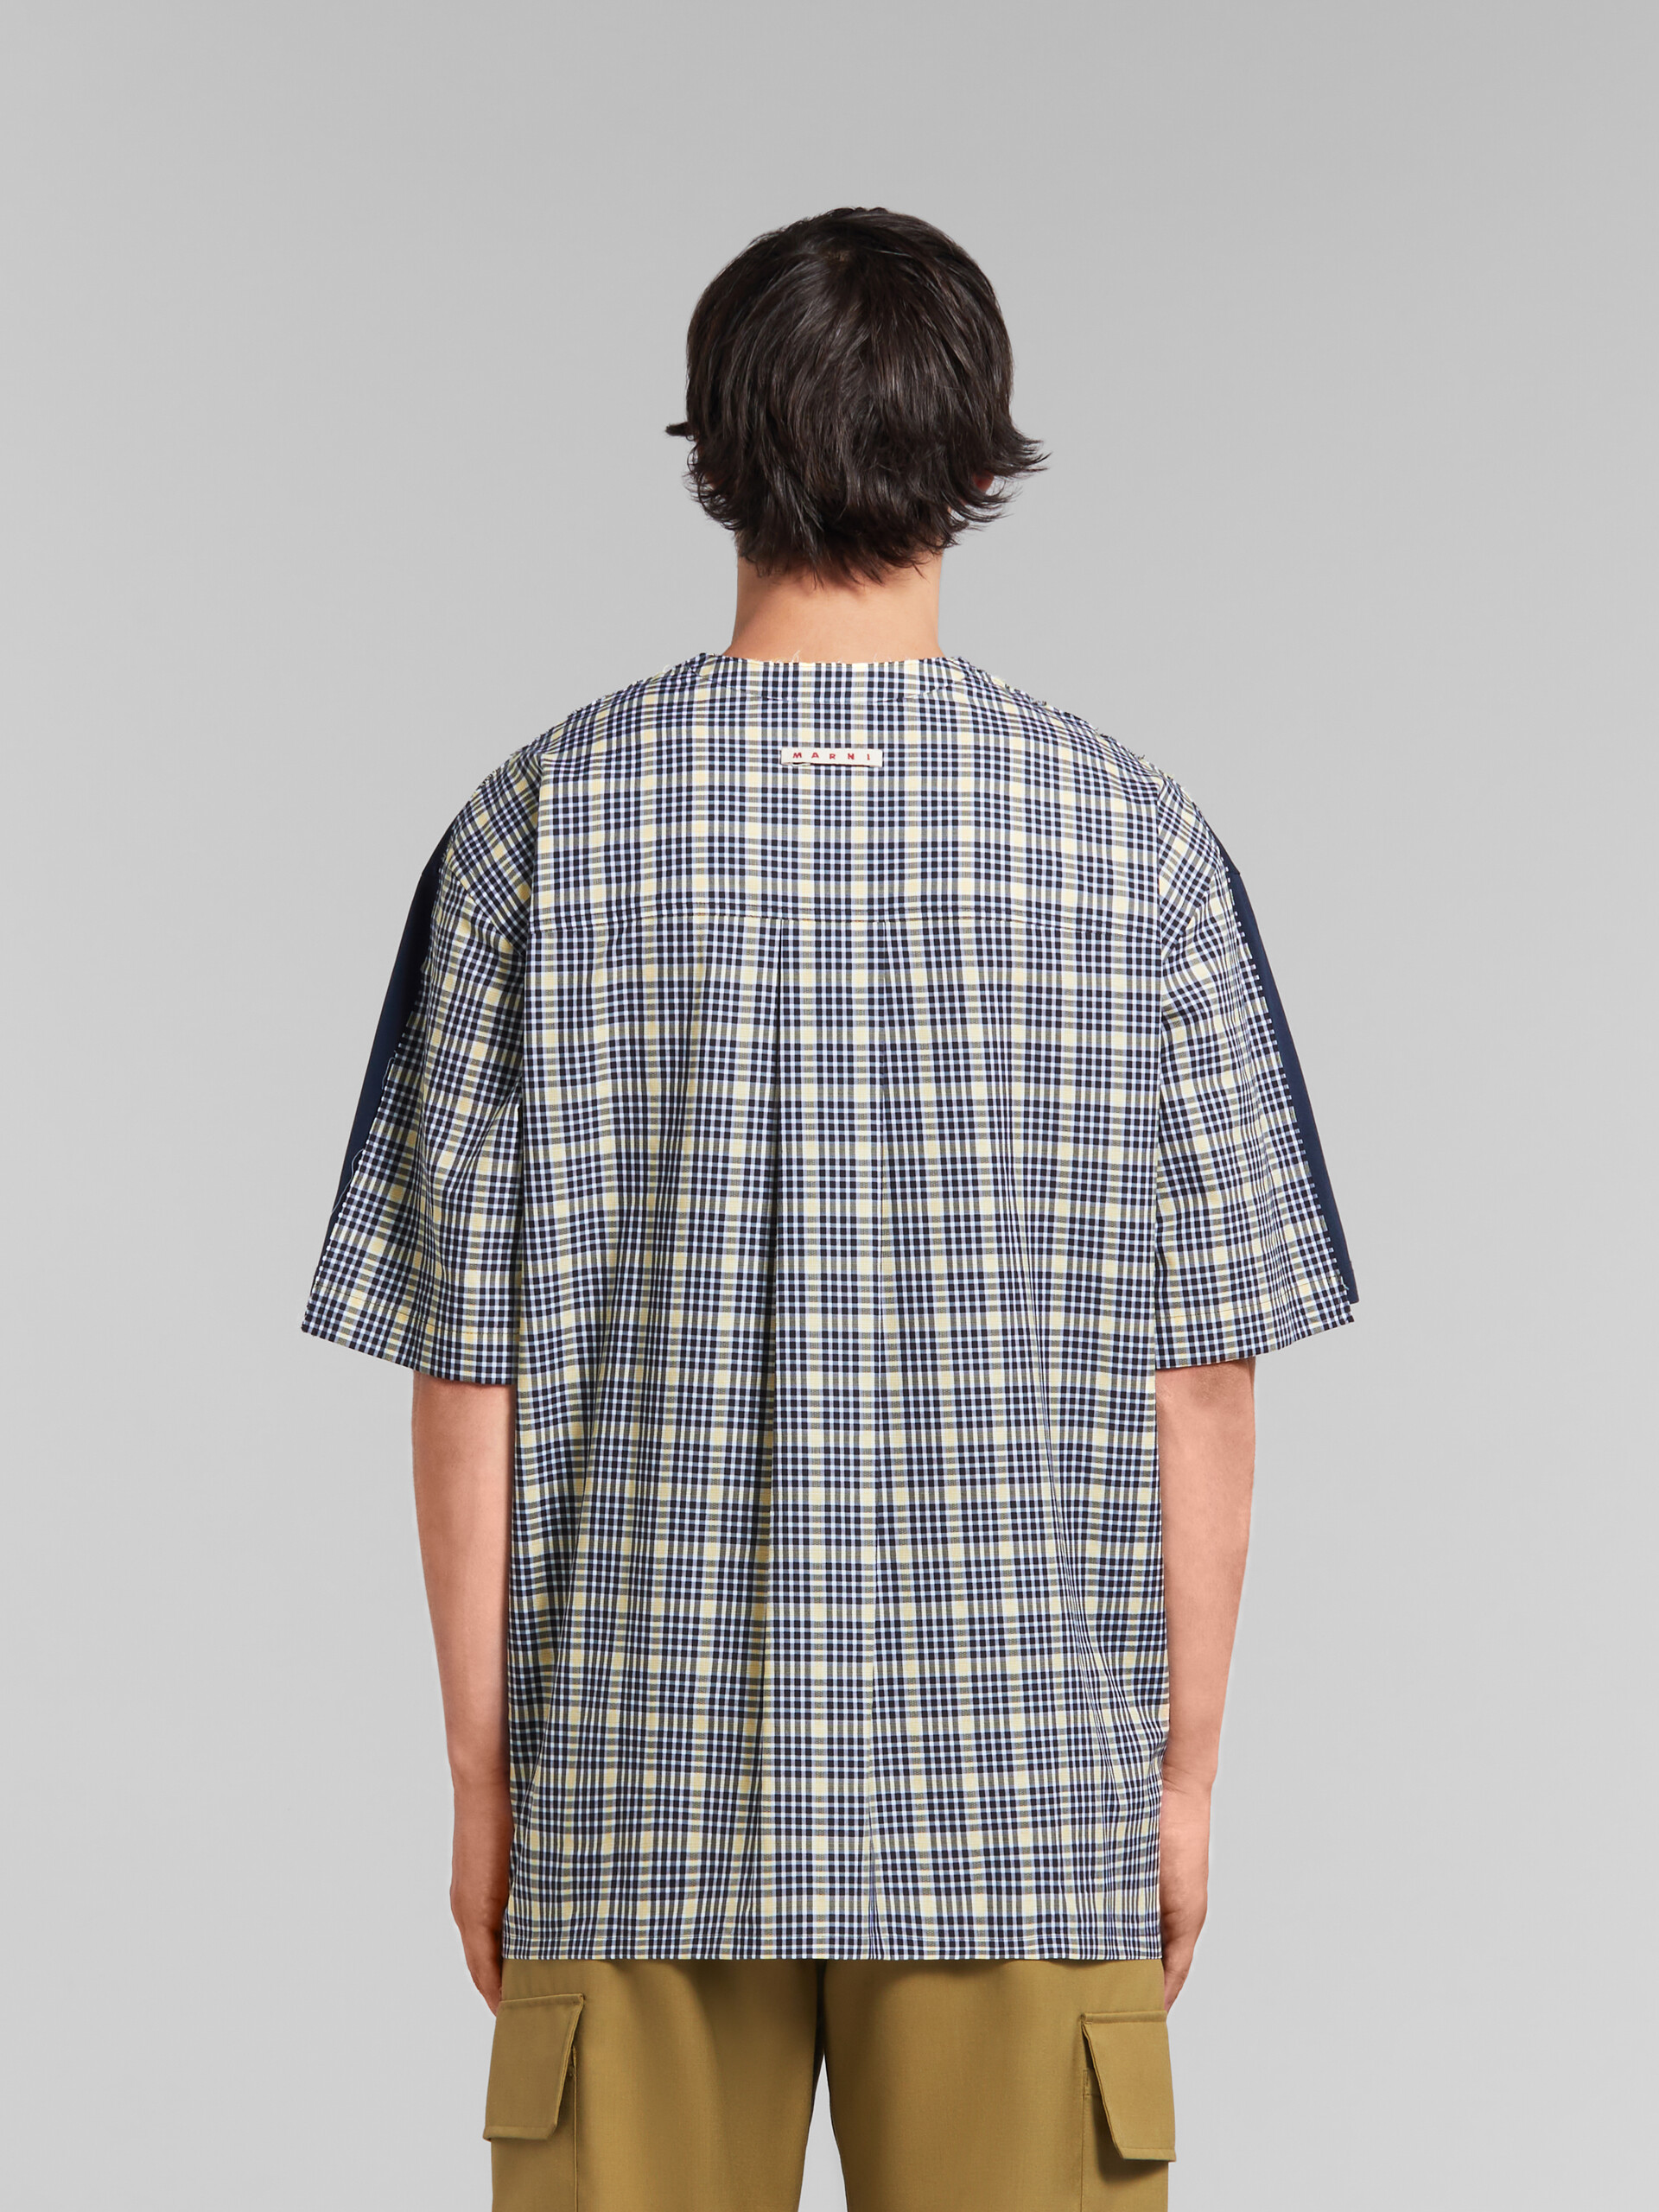 ディープブルー オーガニックコットン製Tシャツ、チェックバック - Tシャツ - Image 3